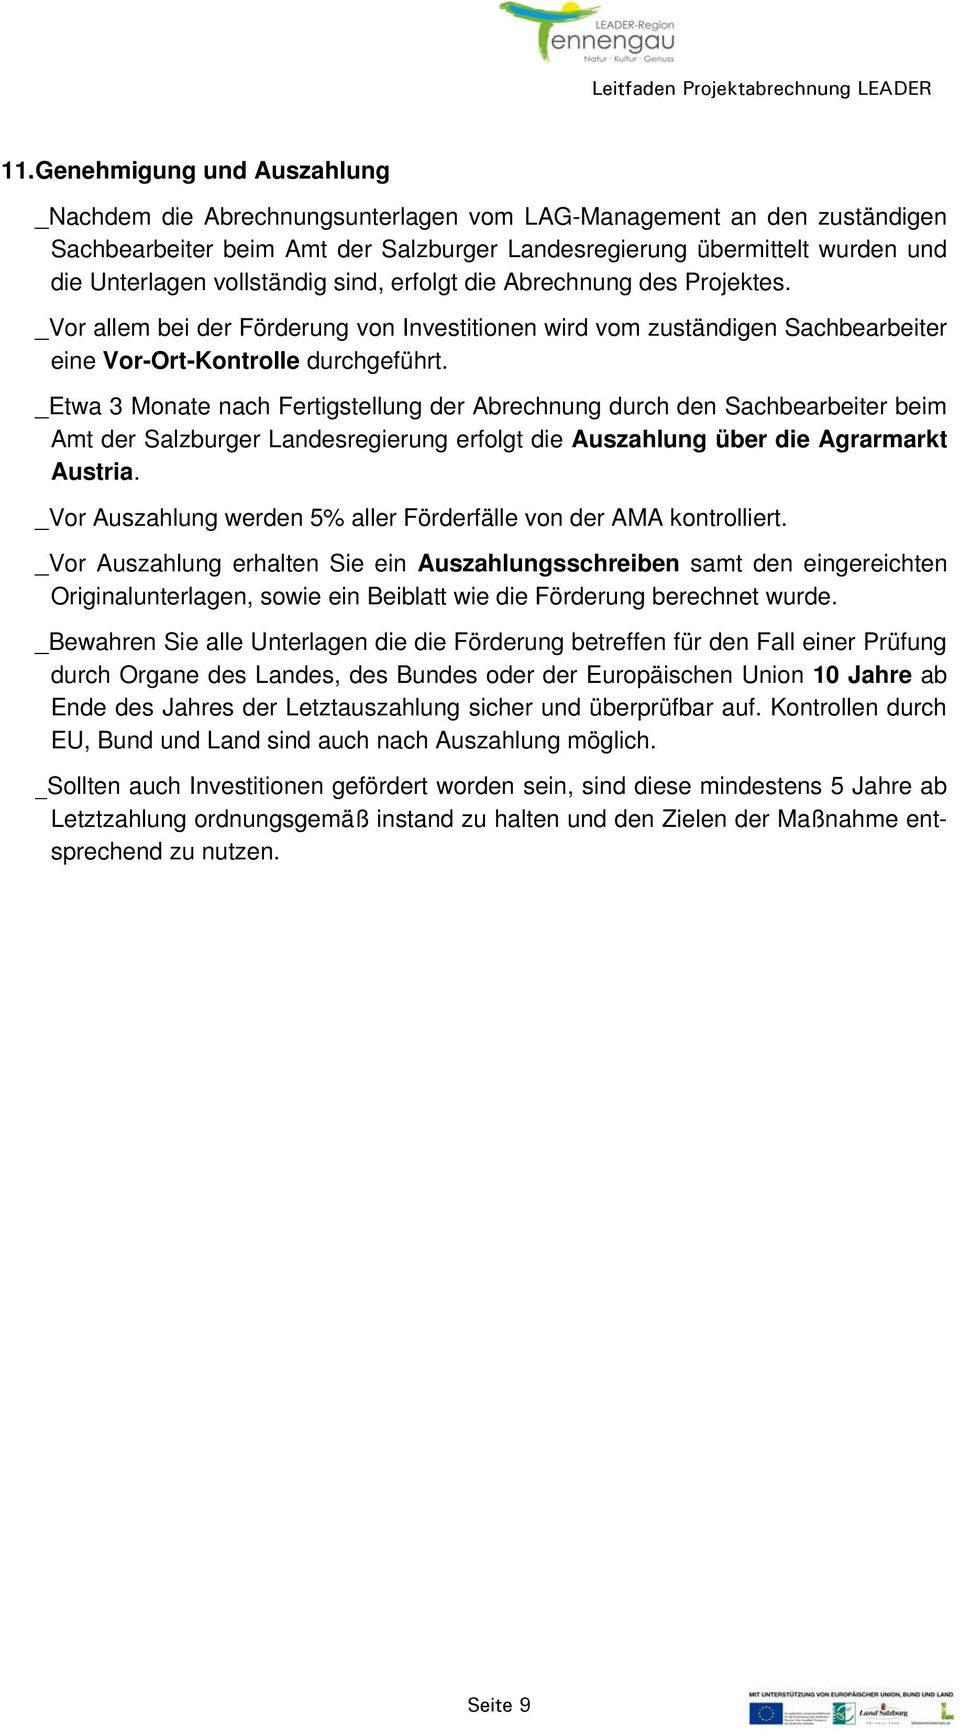 _Etwa 3 Monate nach Fertigstellung der Abrechnung durch den Sachbearbeiter beim Amt der Salzburger Landesregierung erfolgt die Auszahlung über die Agrarmarkt Austria.